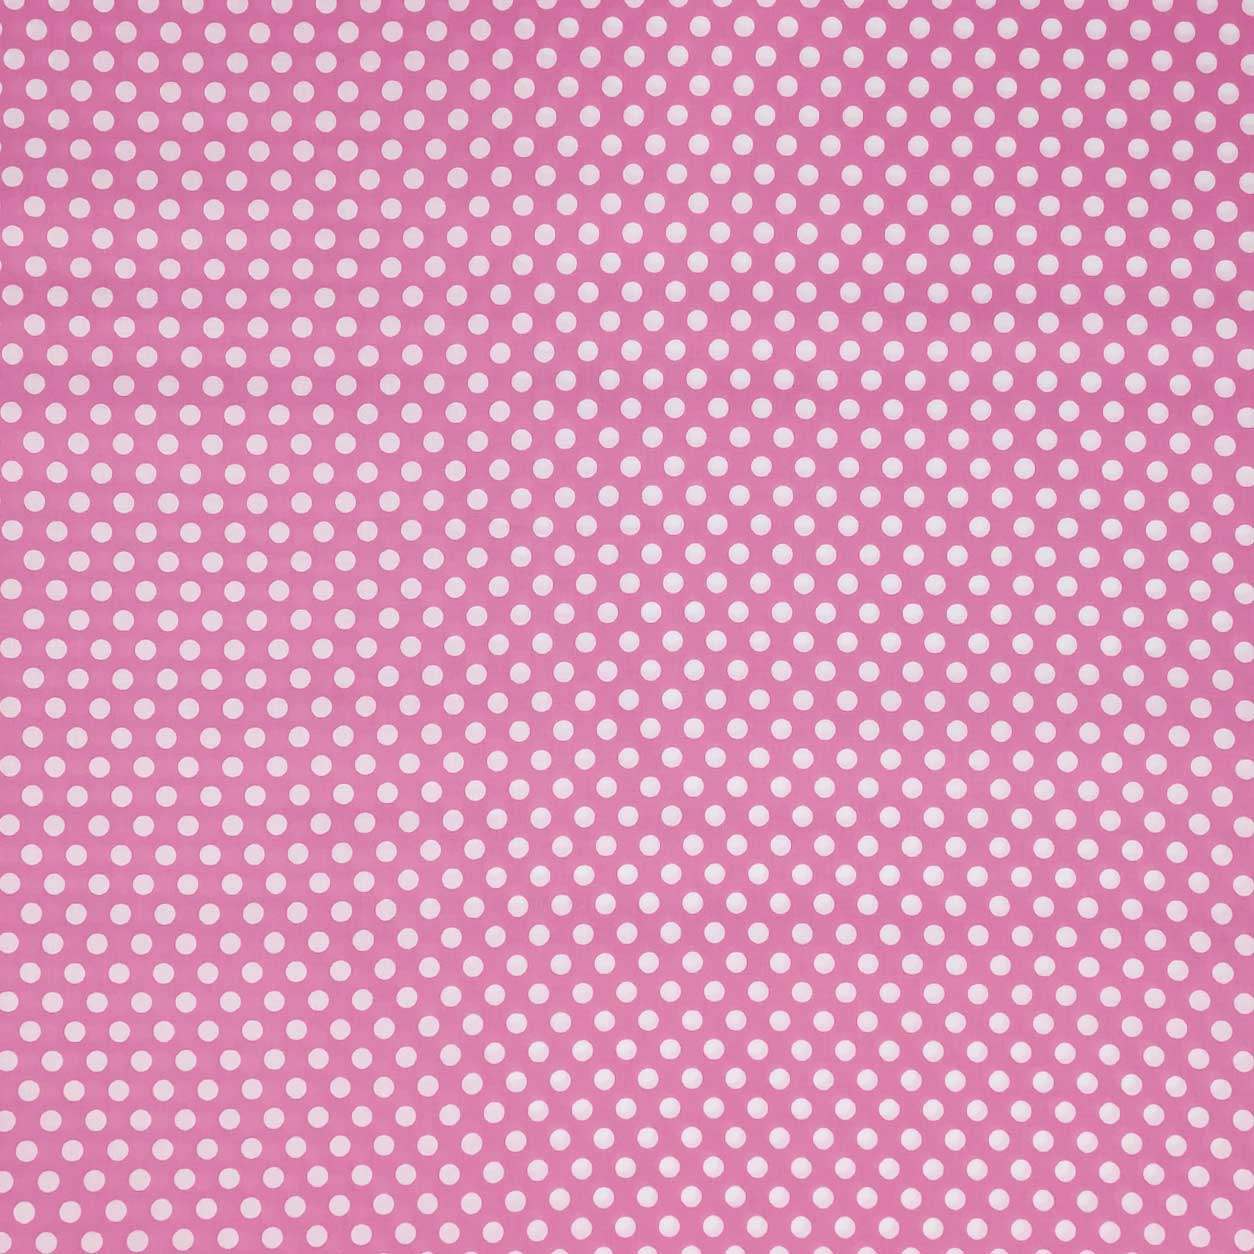 tessuto cotone pois bianchi grandi sfondo rosa